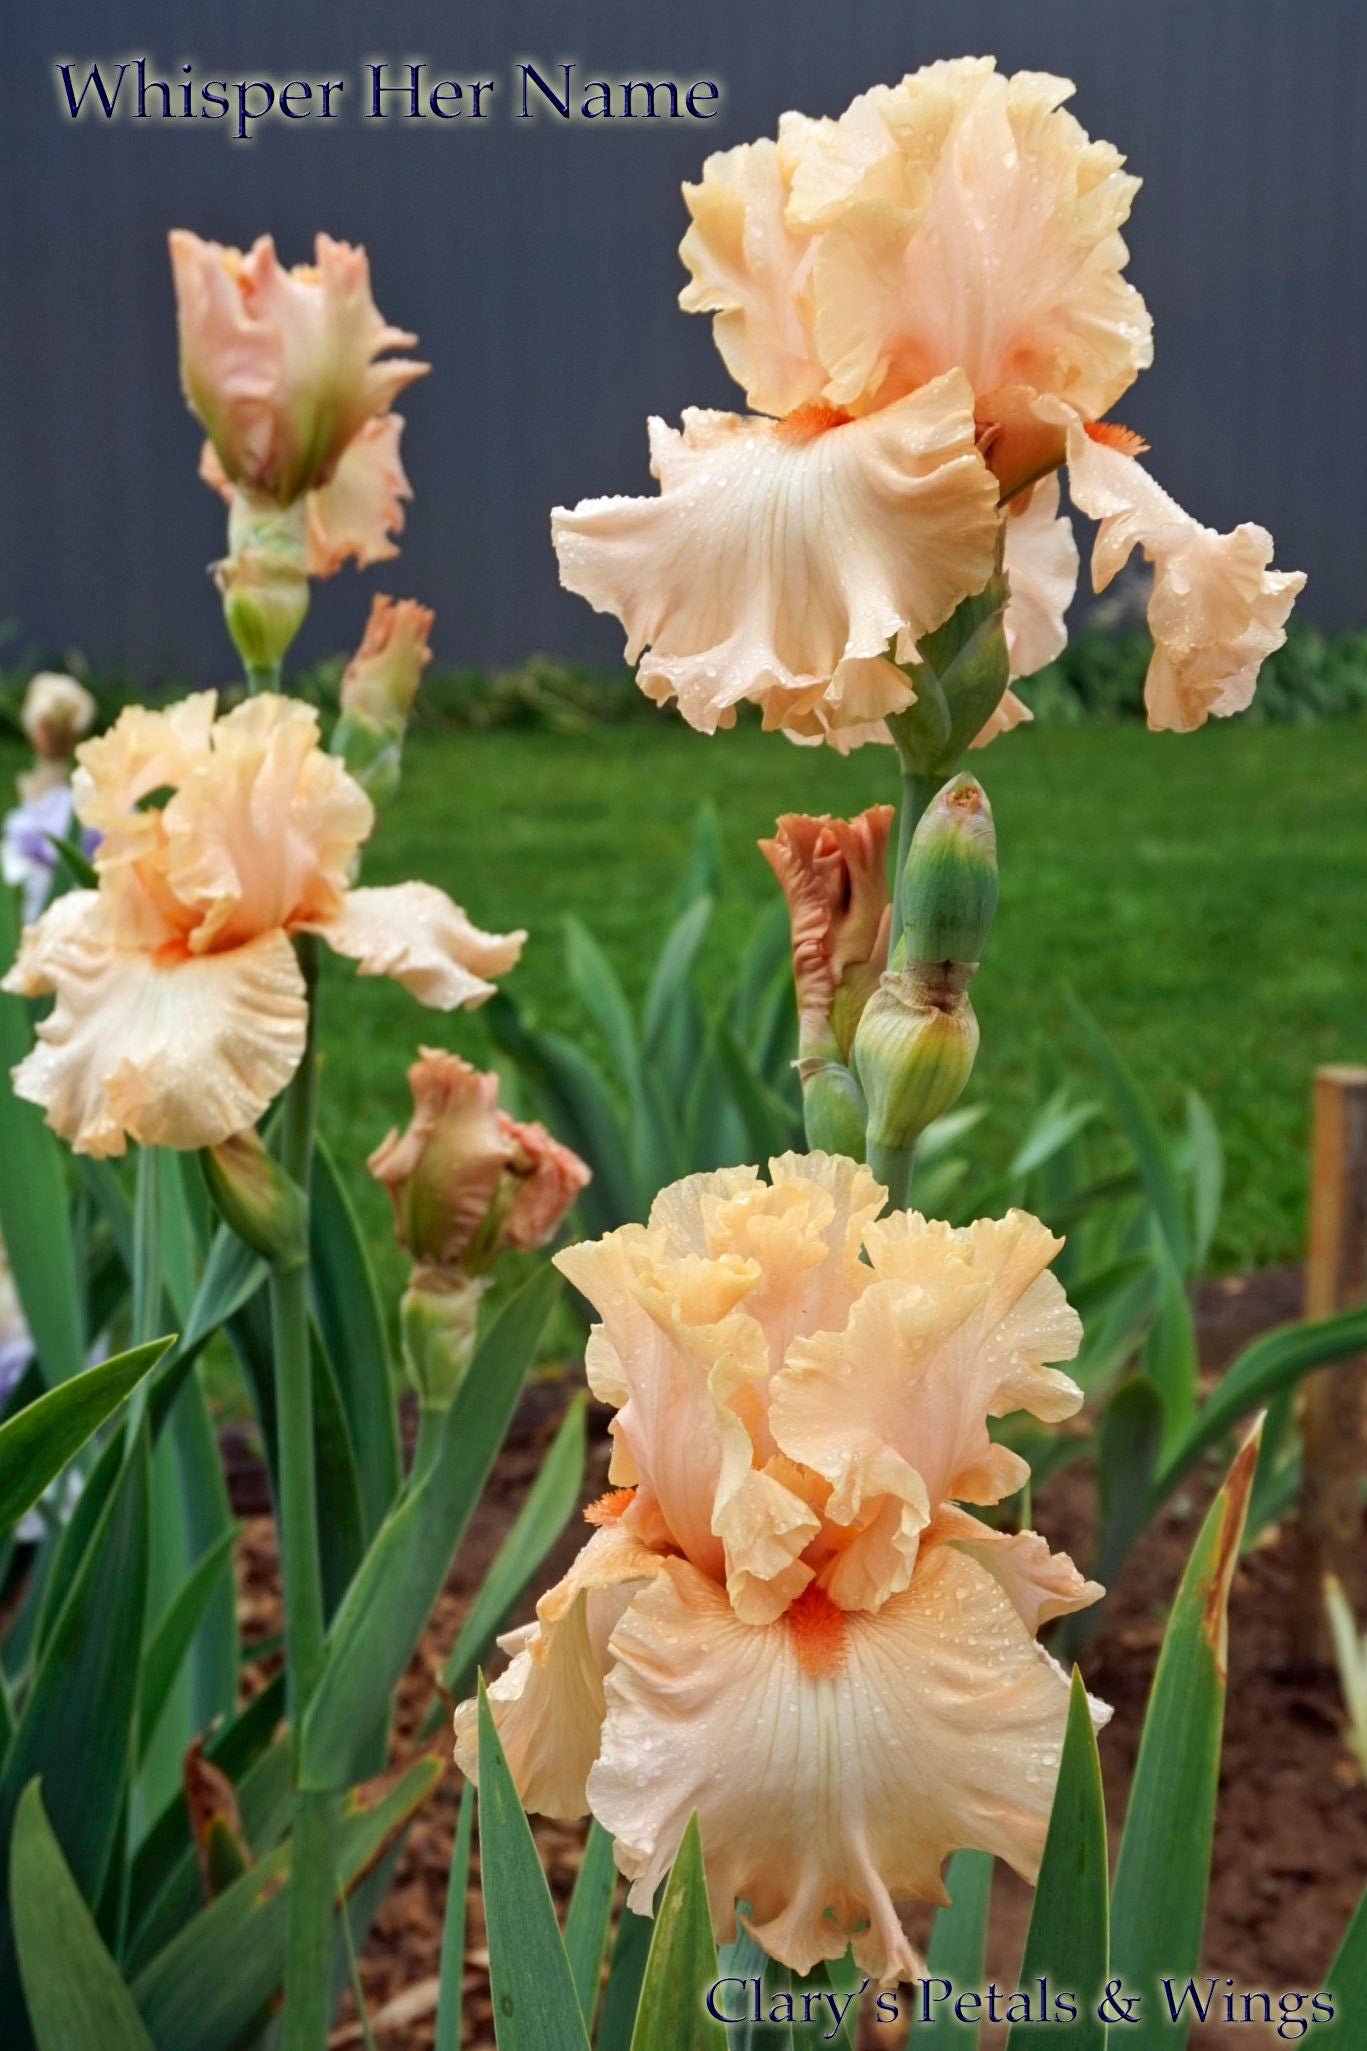 Whisper Her Name - 2011 Tall Bearded Iris - Blyth Import